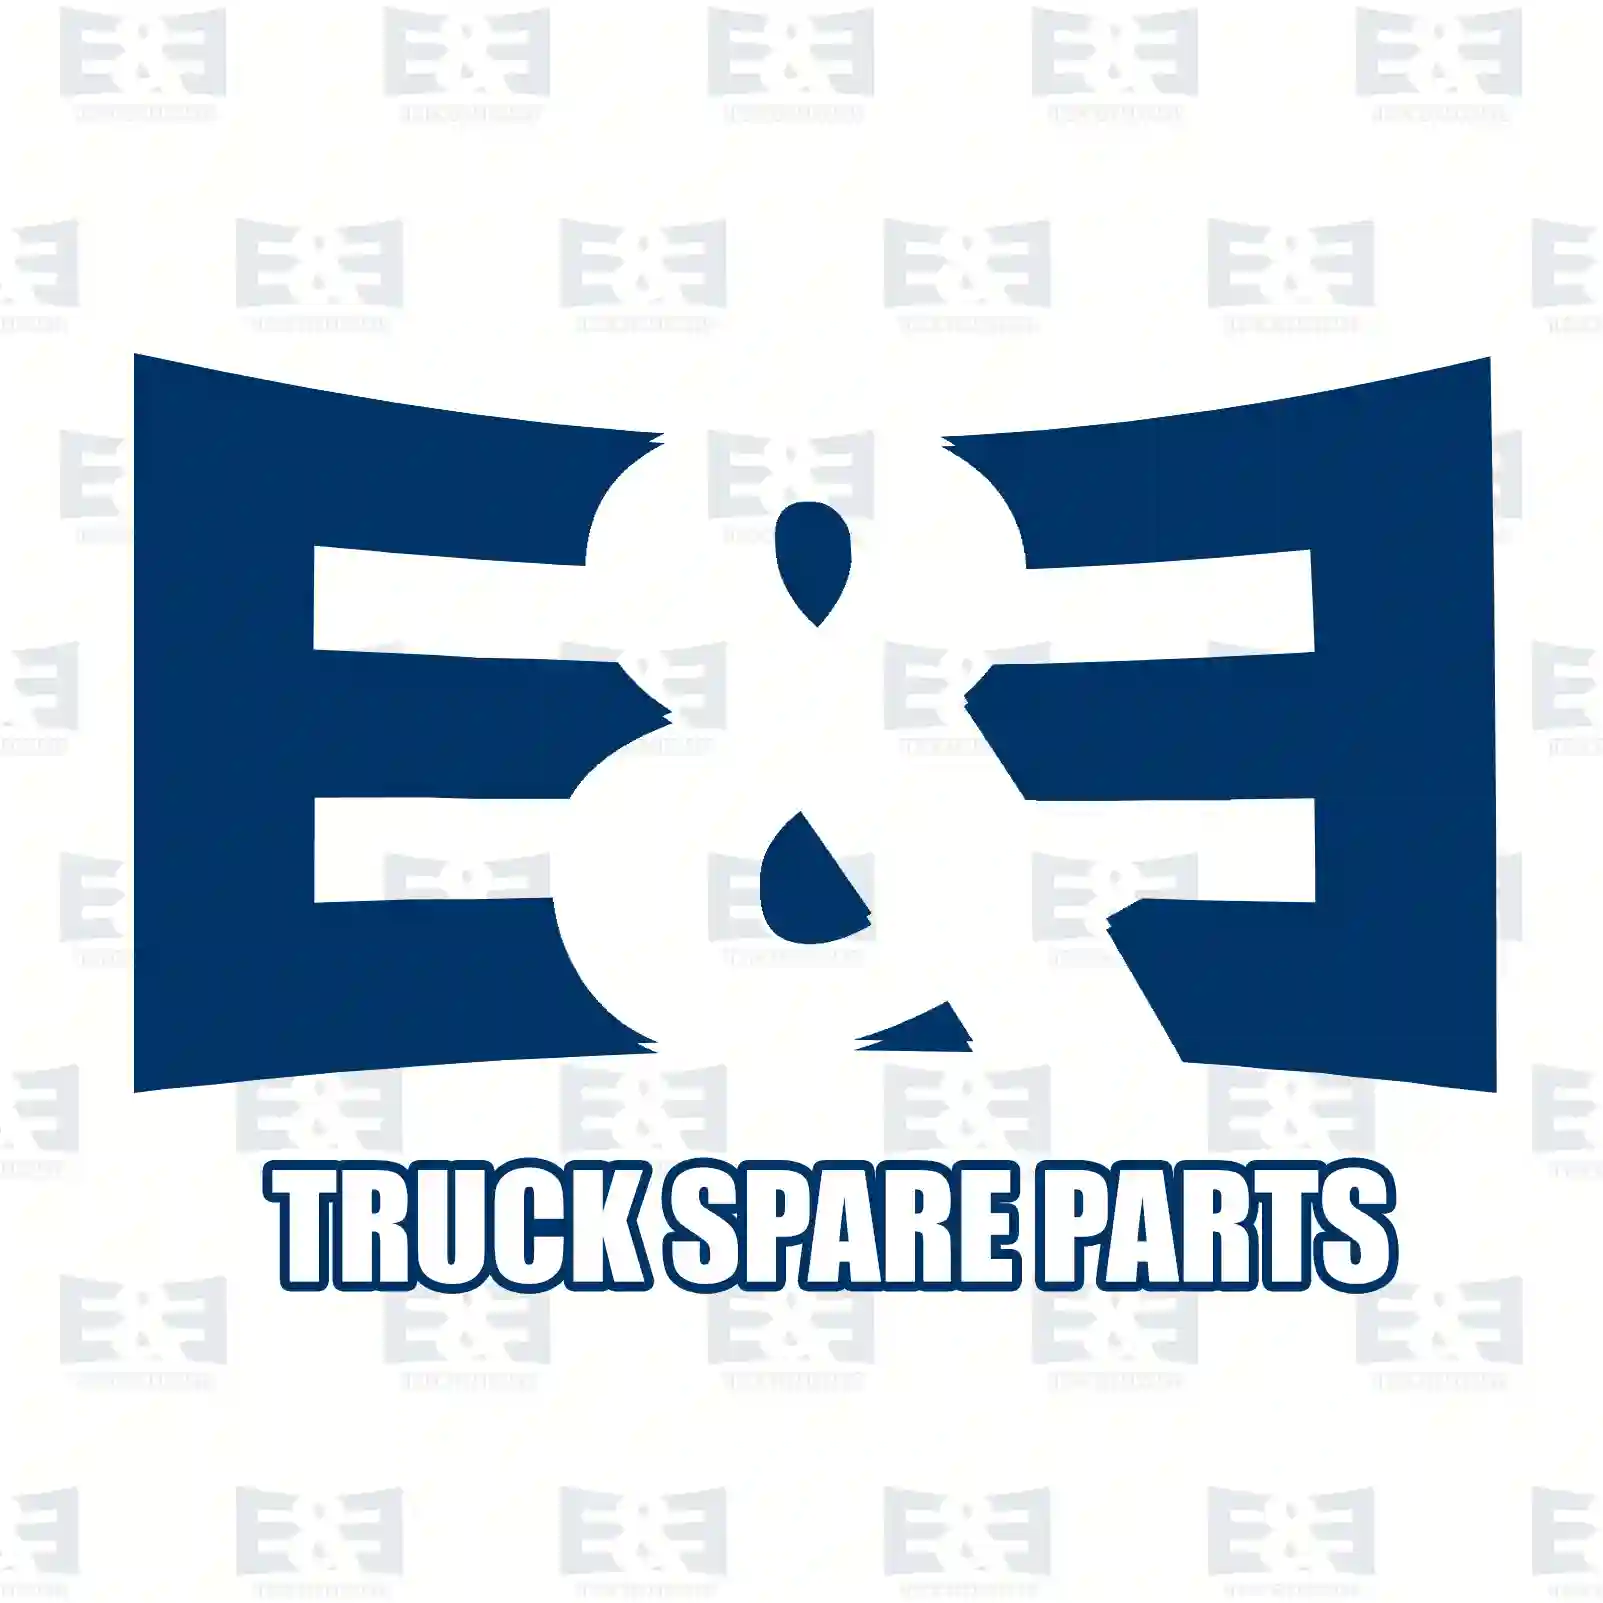 Rocker arm screw, 2E2206246, 1350211, 1445924, 1487542, ||  2E2206246 E&E Truck Spare Parts | Truck Spare Parts, Auotomotive Spare Parts Rocker arm screw, 2E2206246, 1350211, 1445924, 1487542, ||  2E2206246 E&E Truck Spare Parts | Truck Spare Parts, Auotomotive Spare Parts